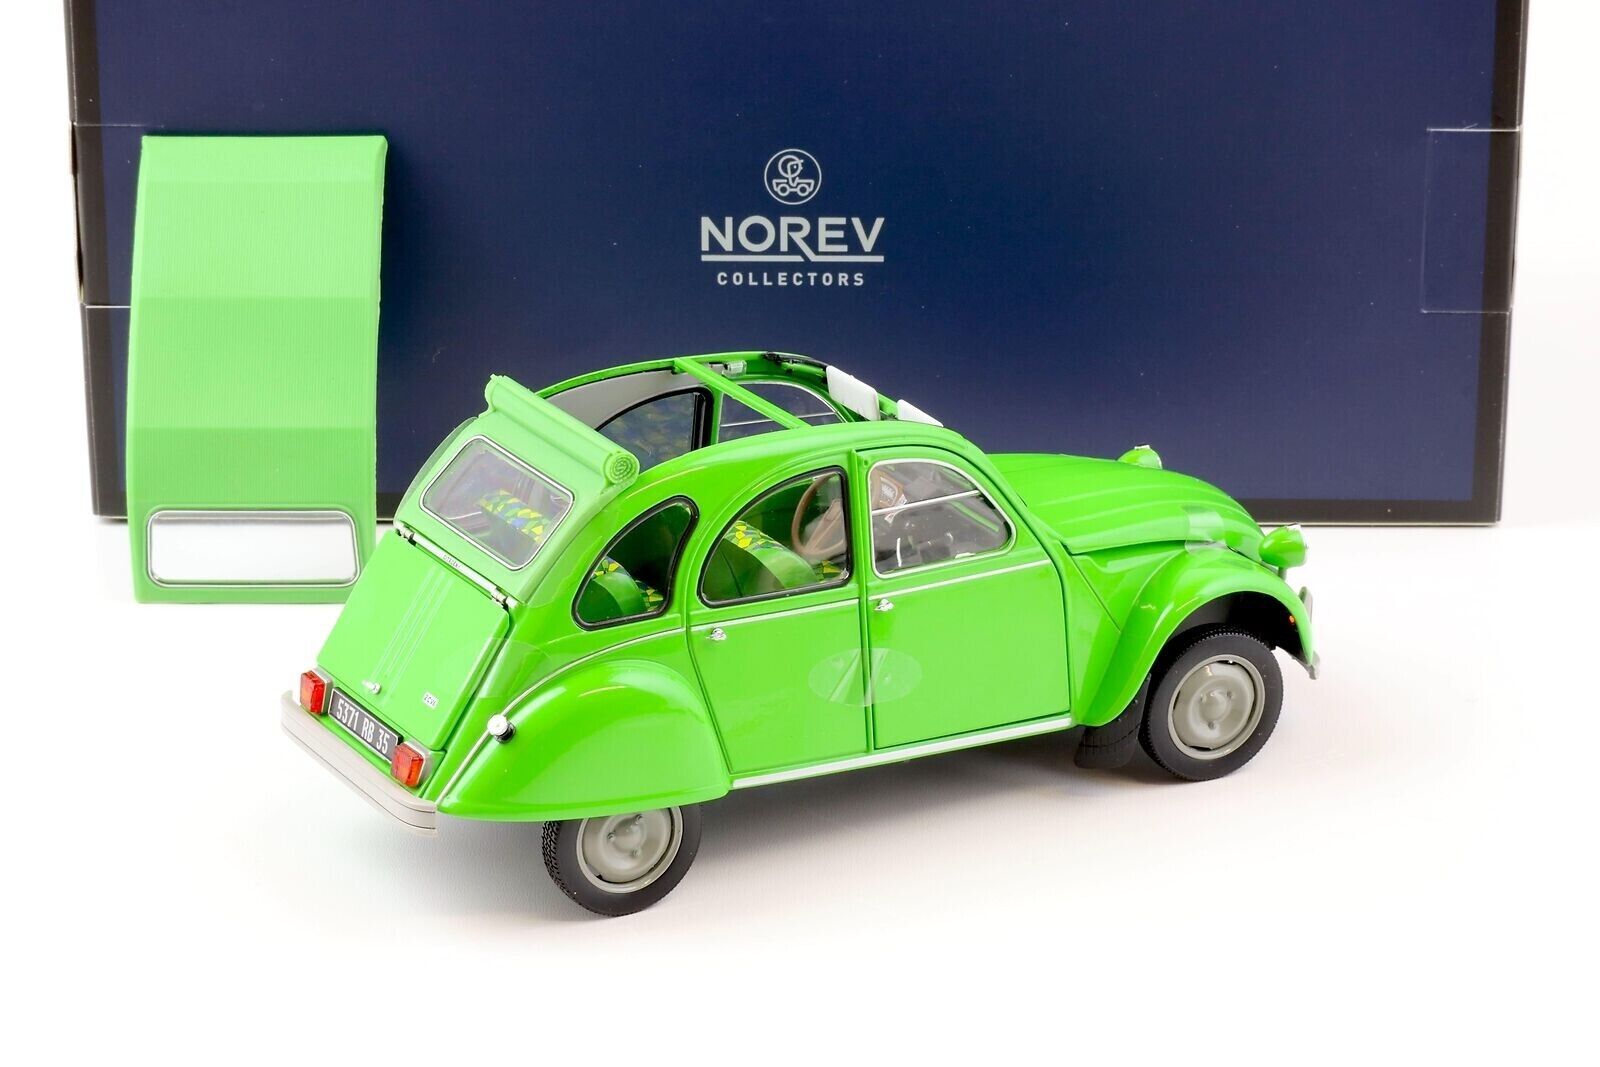 Norev 181477 Citroen 2CV 1974 Ente green 1:18 limited 1/300 modelcar